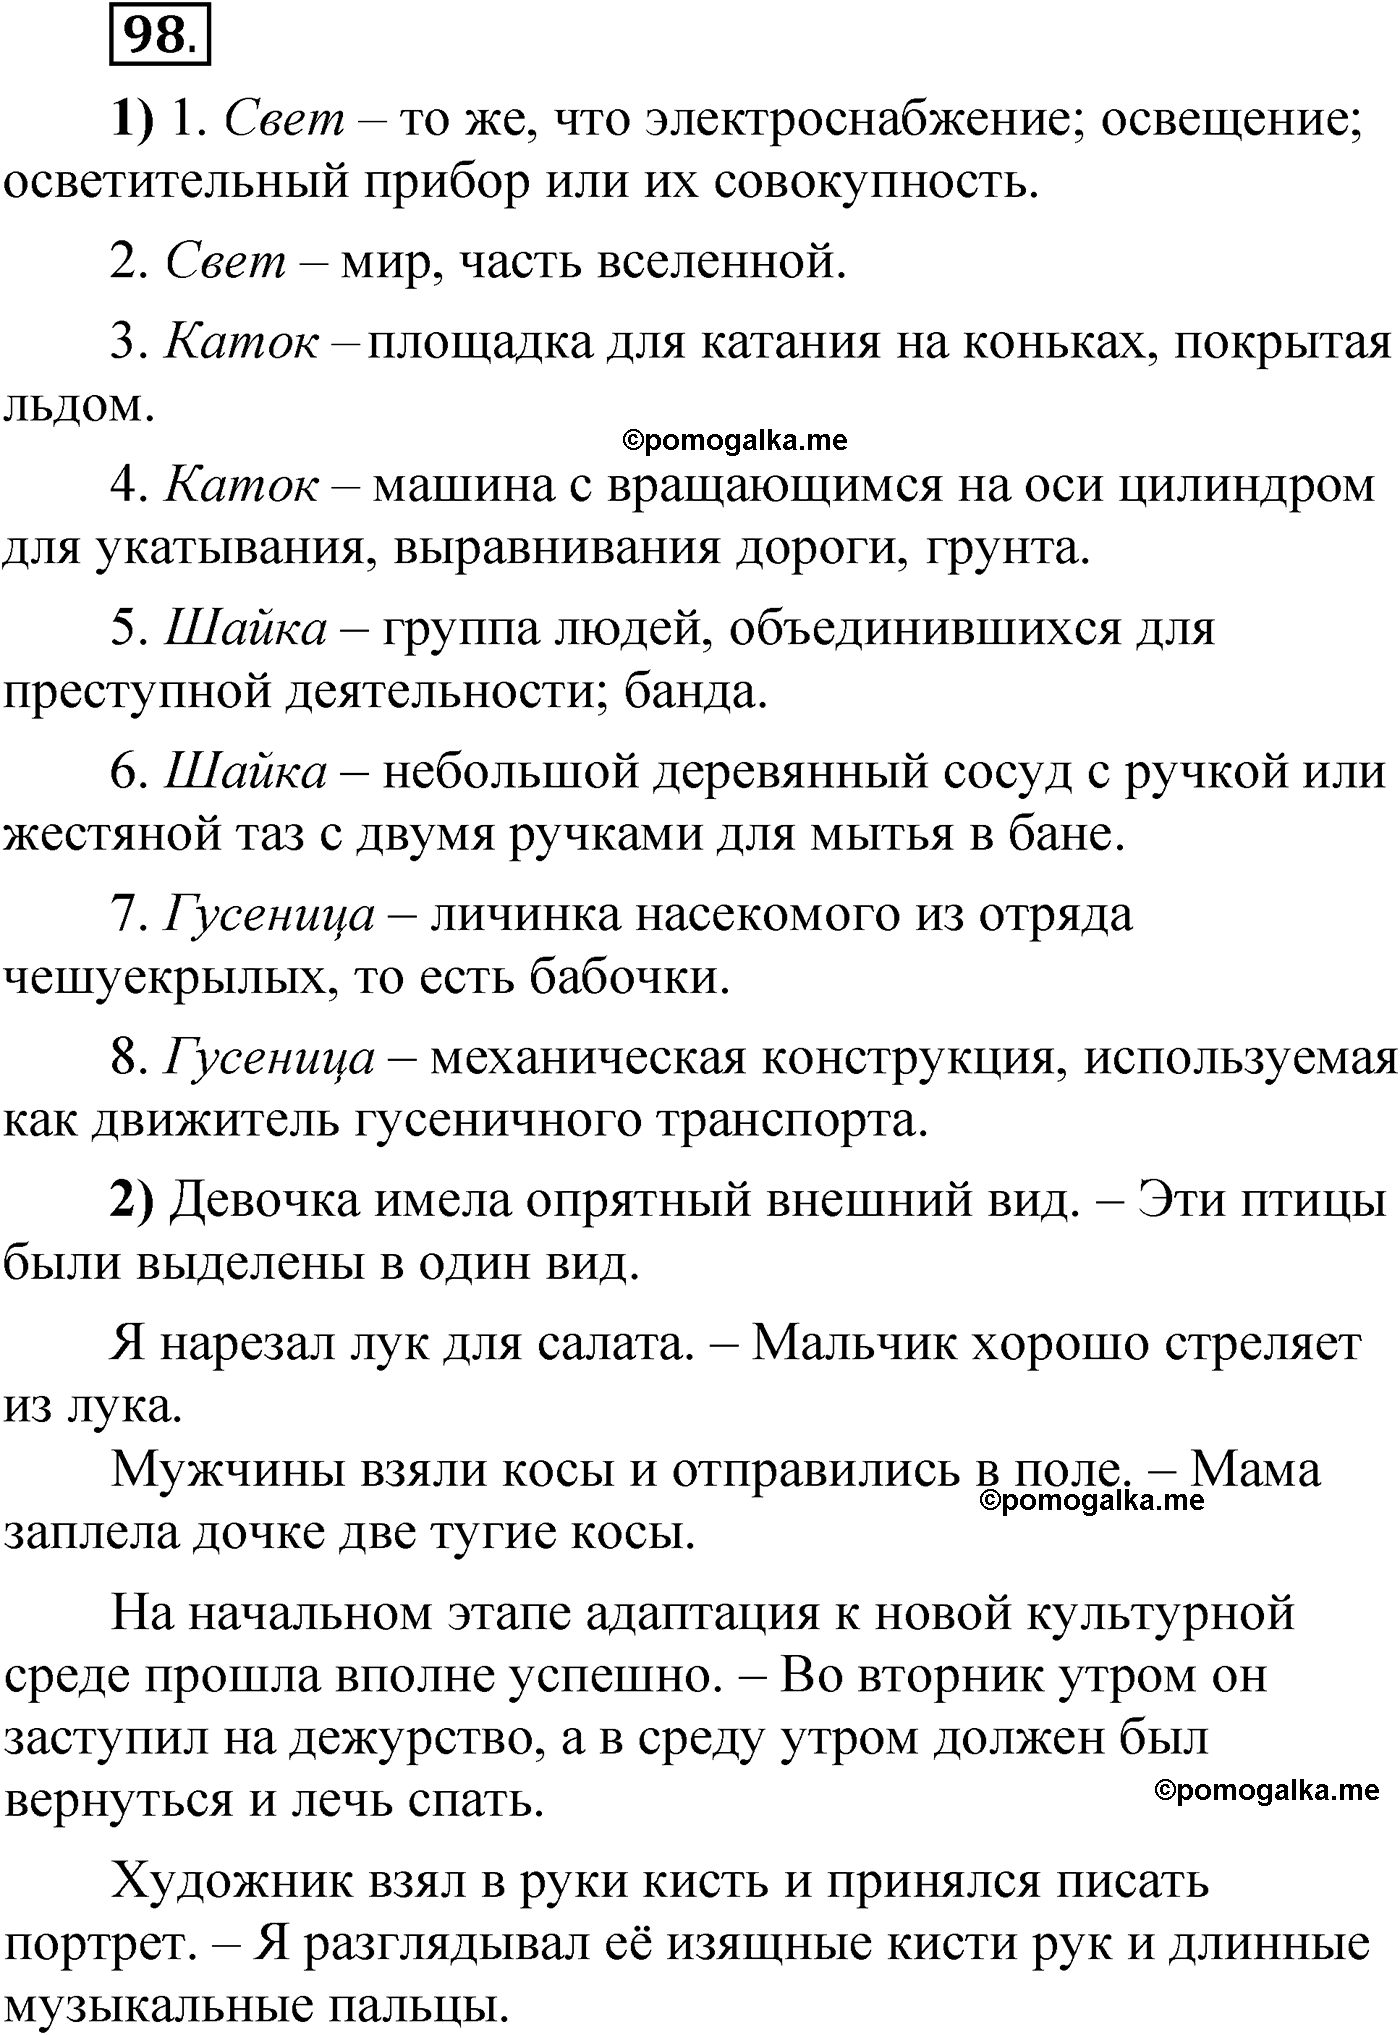 упражнение 98 русский язык 6 класс Александрова 2022